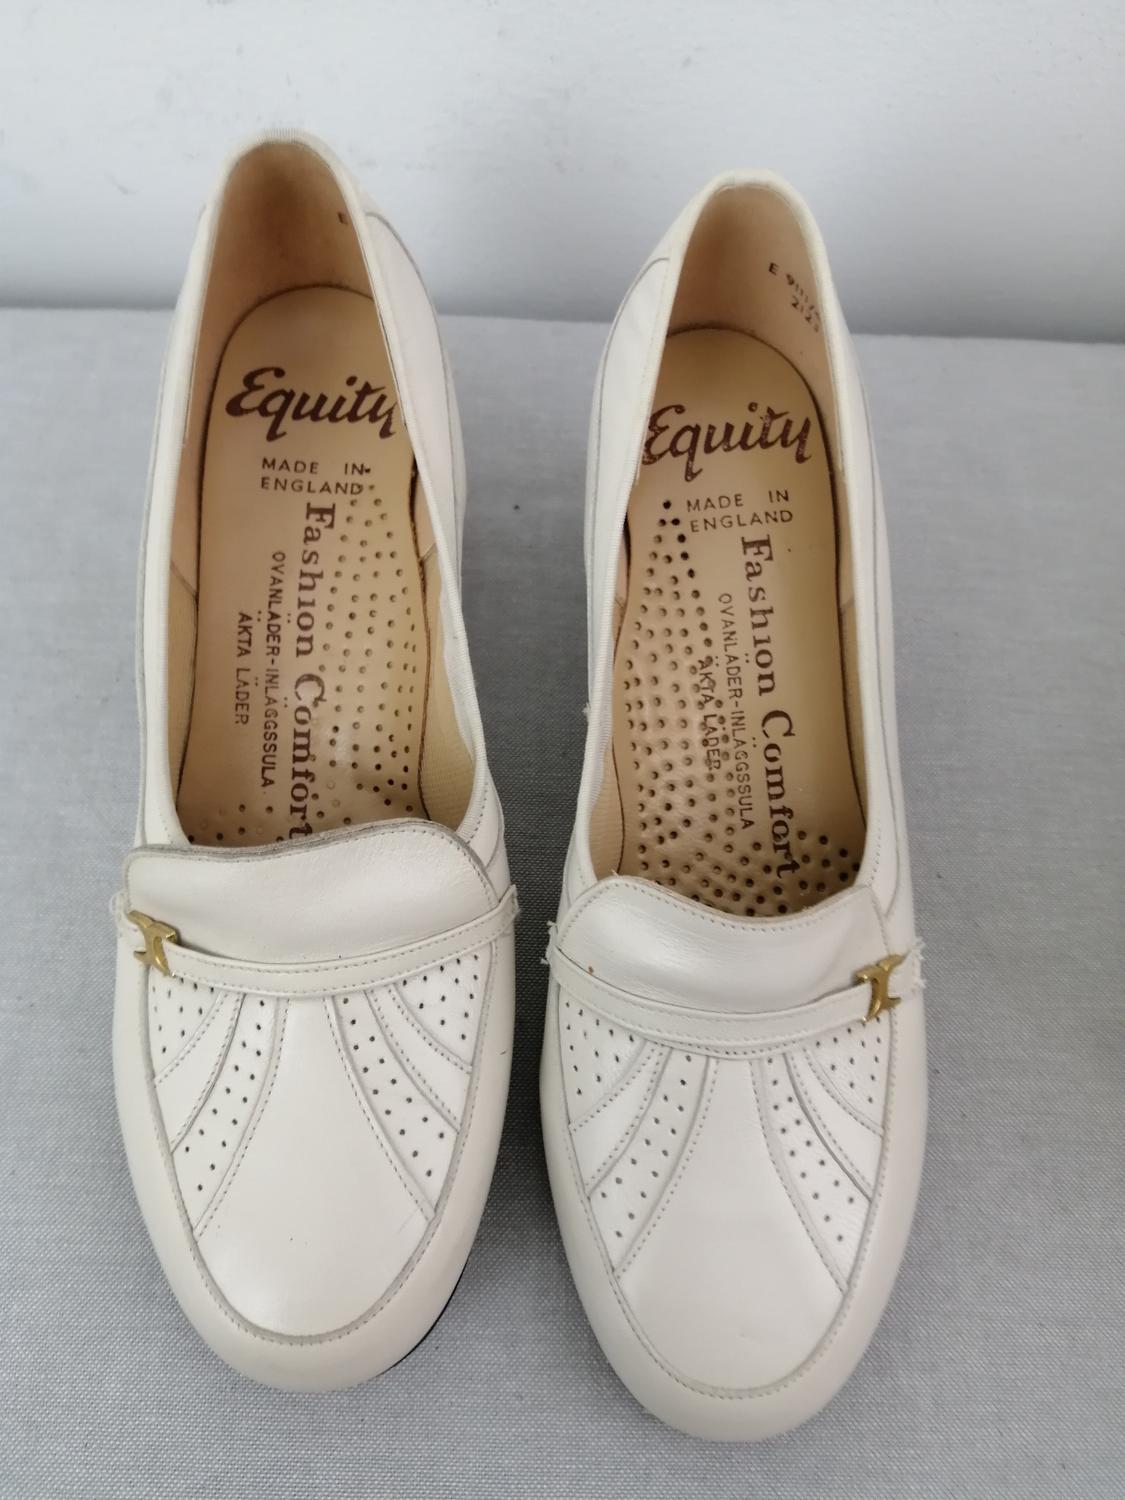 Vintage Equity vit prydlig sko dekor litet spänne stl 3 ca 35